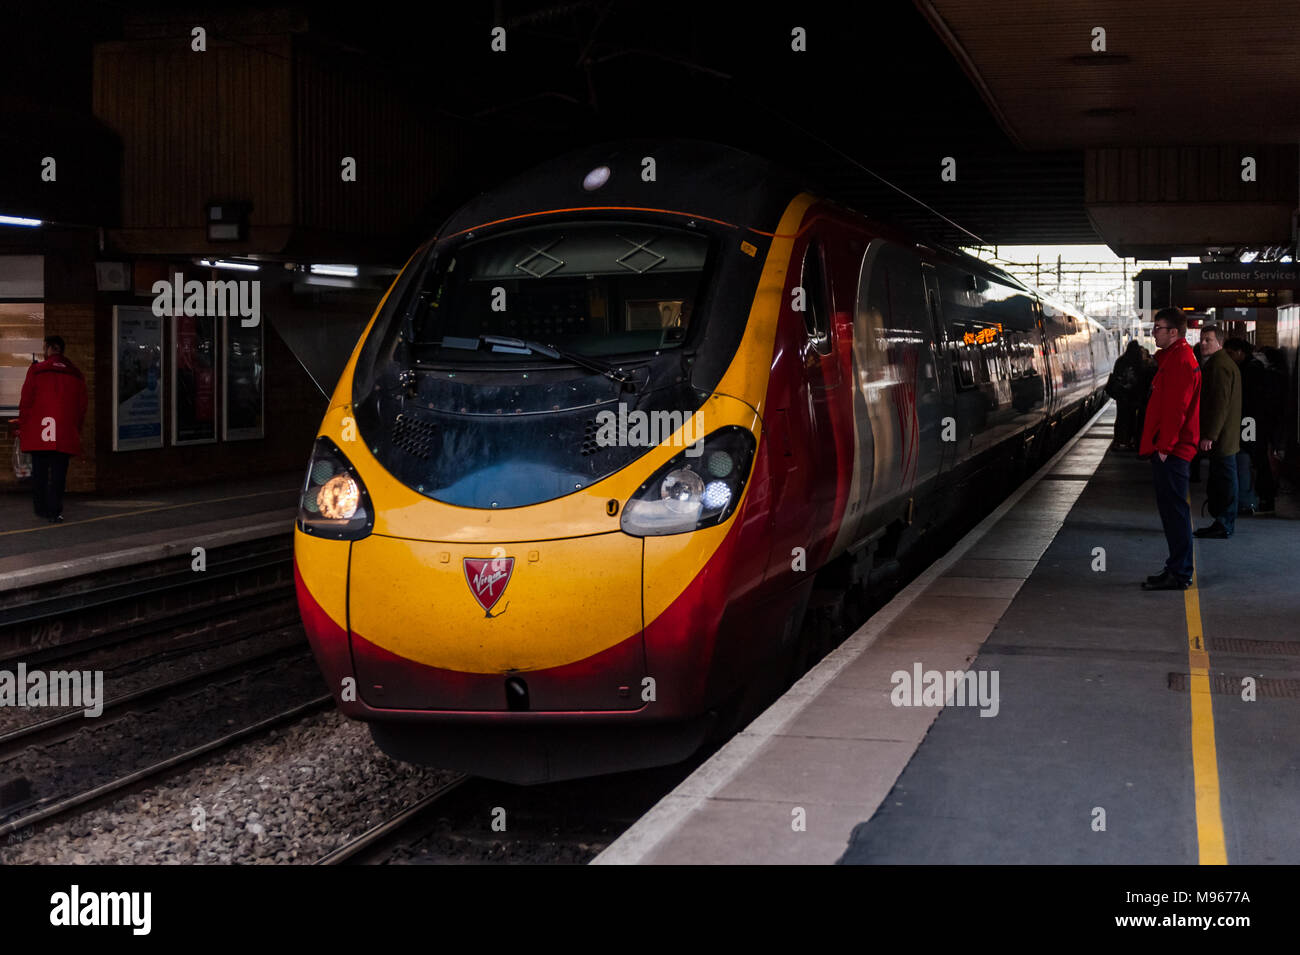 Classe 390 Vergine treno pendolino si avvicina la Stazione Internazionale di Birmingham con un servizio a London Euston, UK. Foto Stock